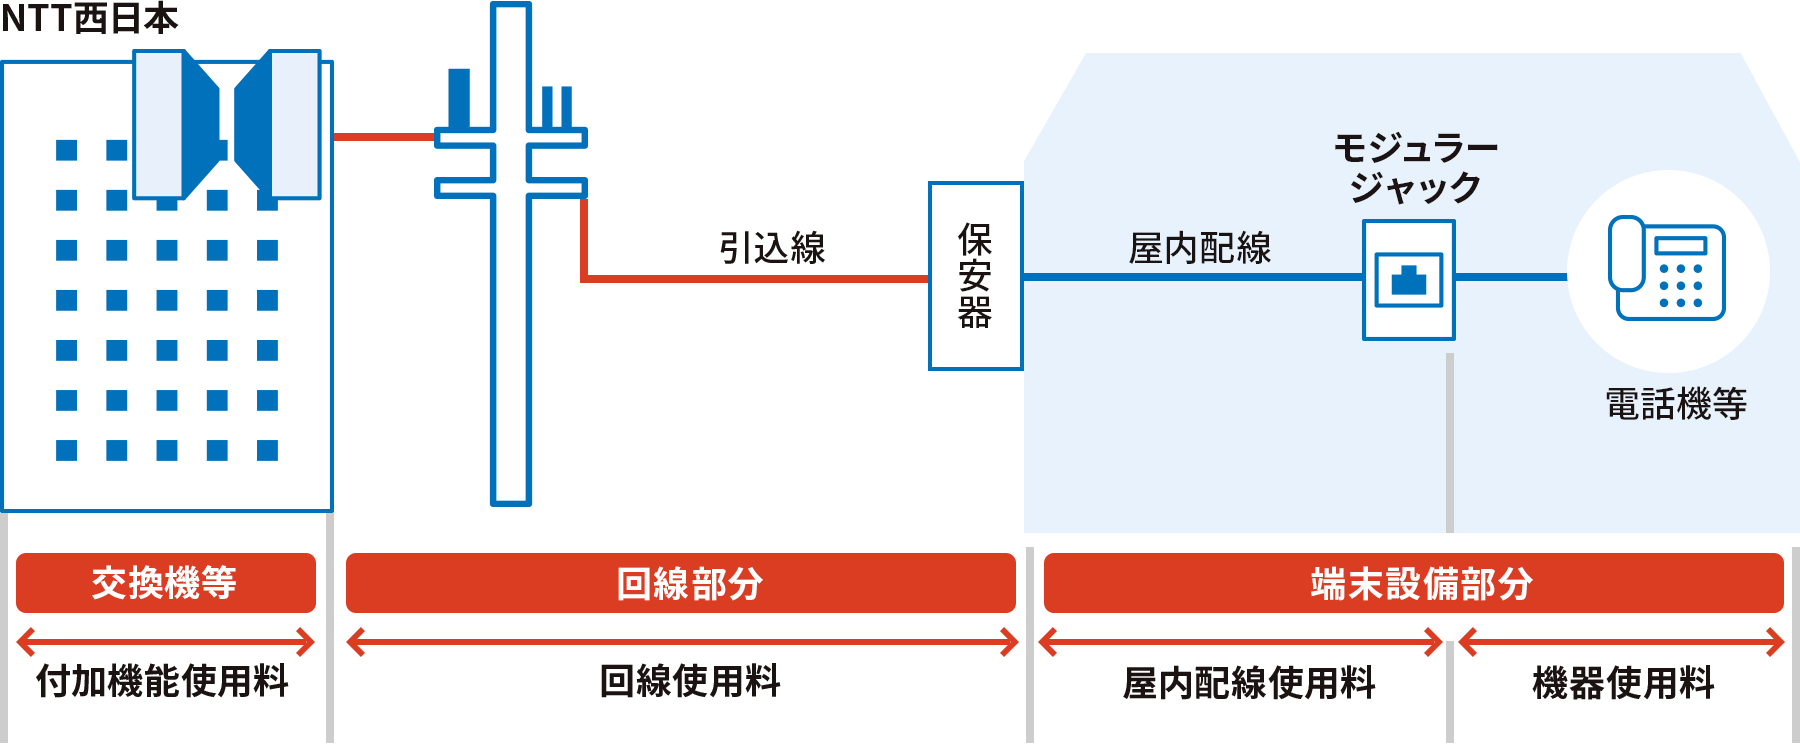 例えば、NTT西日本内の交換機等の「付加機能使用料」、NTT西日本から住宅や事務所までの回線部分の「回線使用料」、屋内に入ると保安器からモジュラージャックまでの「屋内配線使用料」、モジュラージャックから電話機等までの「機器使用料」がかかってきます。